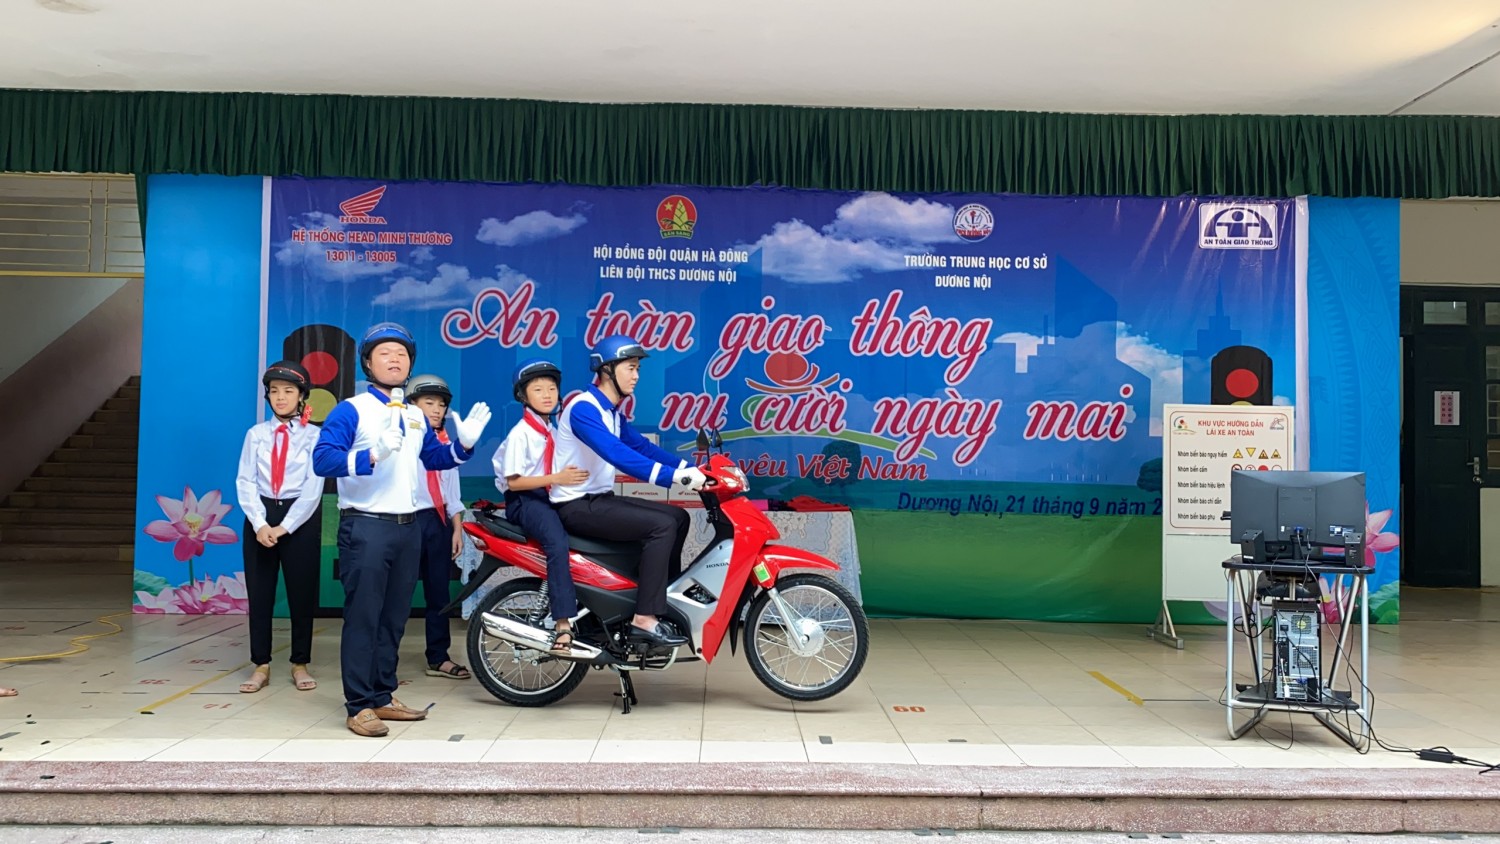 Trường THCS Dương Nội với hoạt động An toàn giao thông!